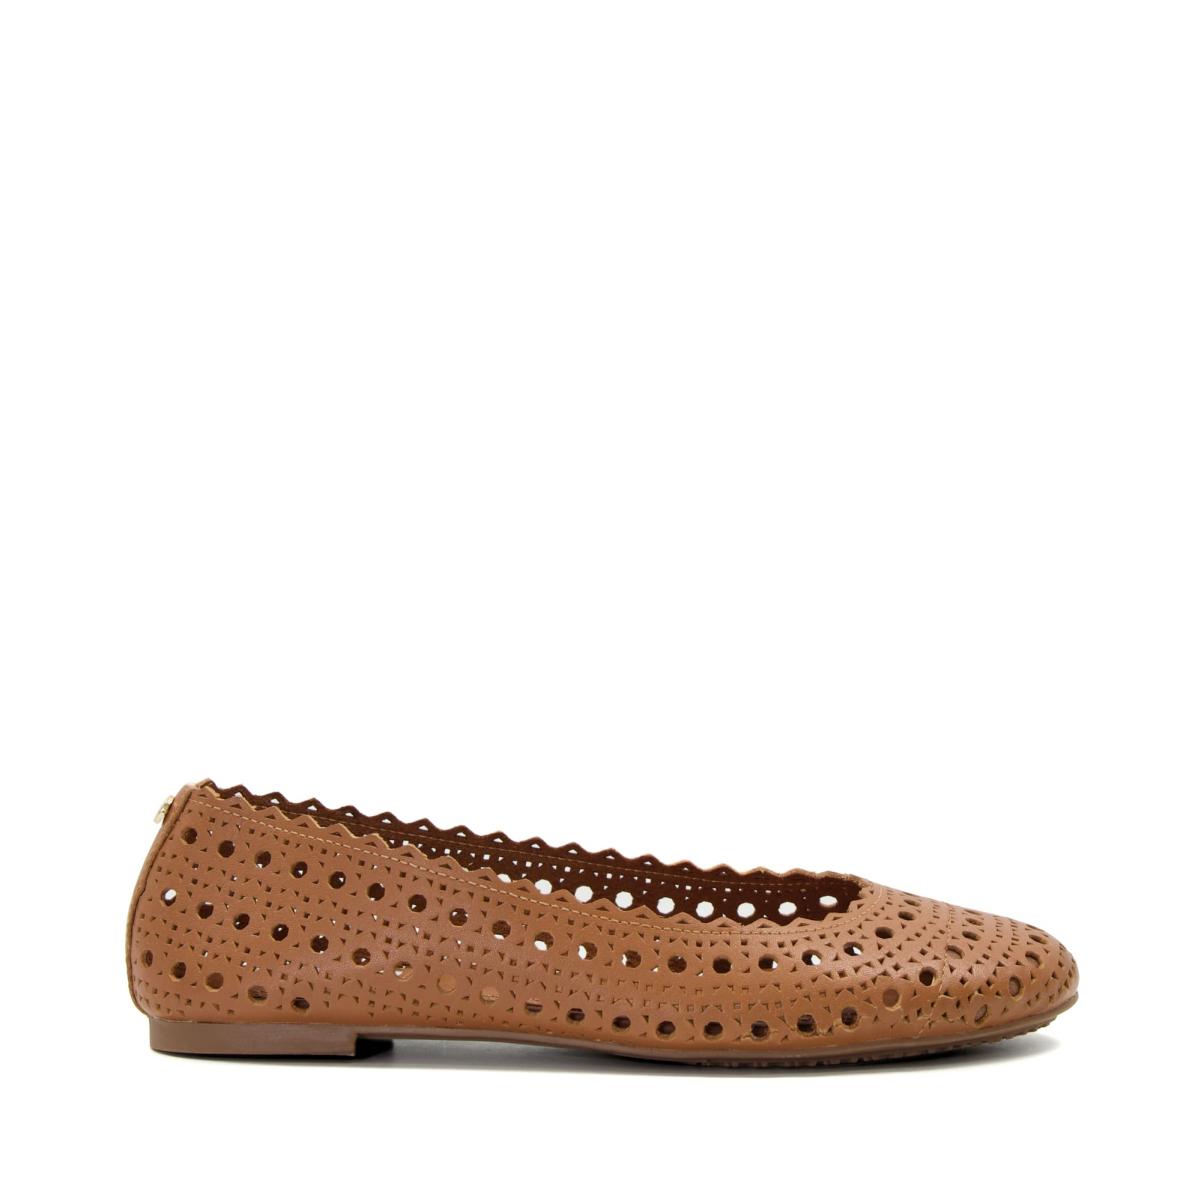 Dune London Harlows - Tan Flat Shoes Women - 2